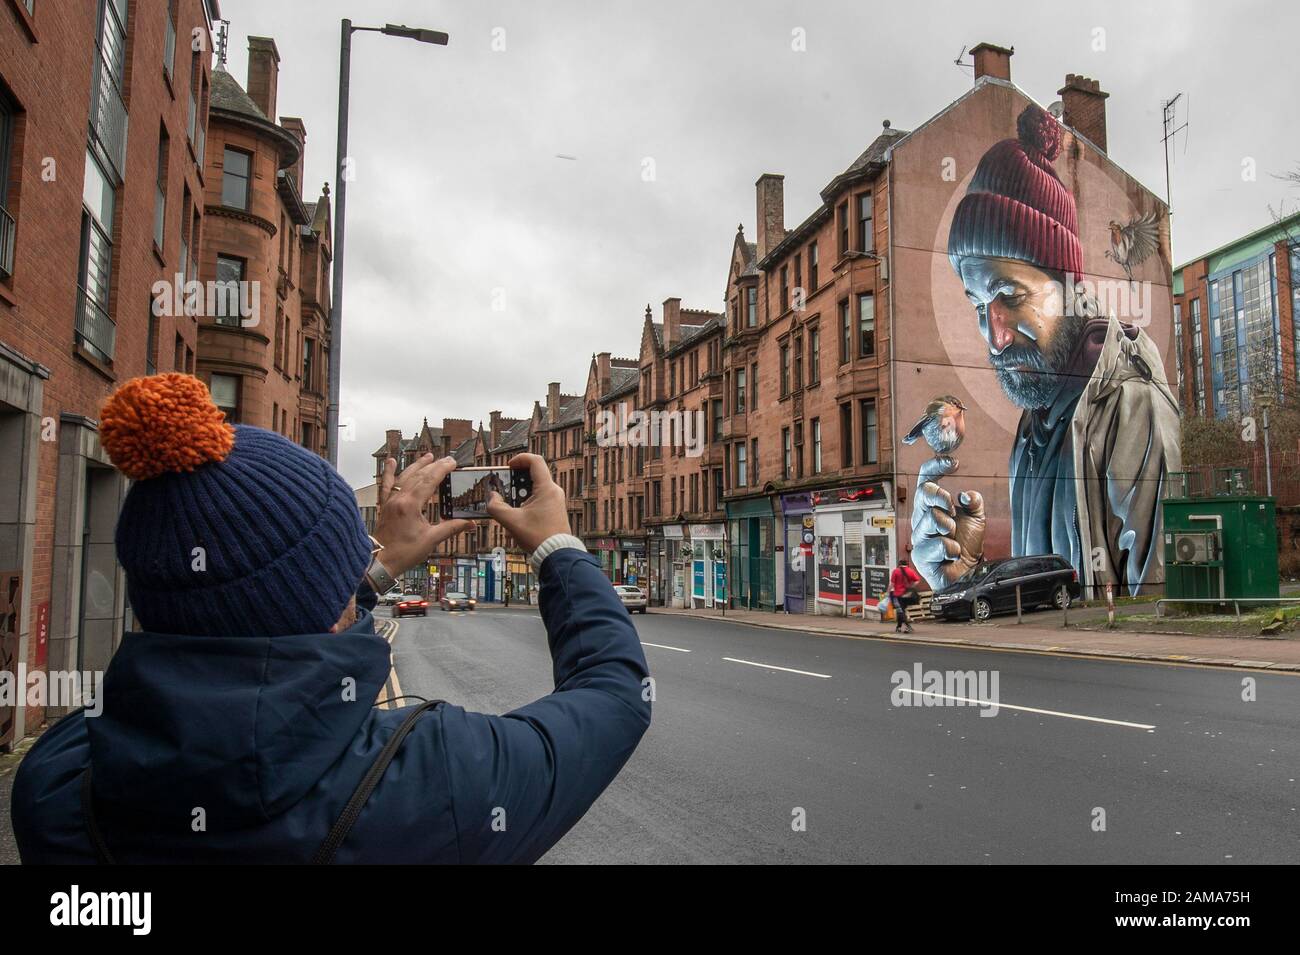 Eine der bekanntesten Wandbilder Glasgows, von Straßenkünstler Smug, stellt einen modernen St Mungo dar, der auf die Geschichte des Vogels Verweist, Der Nie Flog. Der 13. Januar ist der Festtag von St. Mungo, der der Schutzpatron und Gründer der Stadt Glasgow ist. Stockfoto